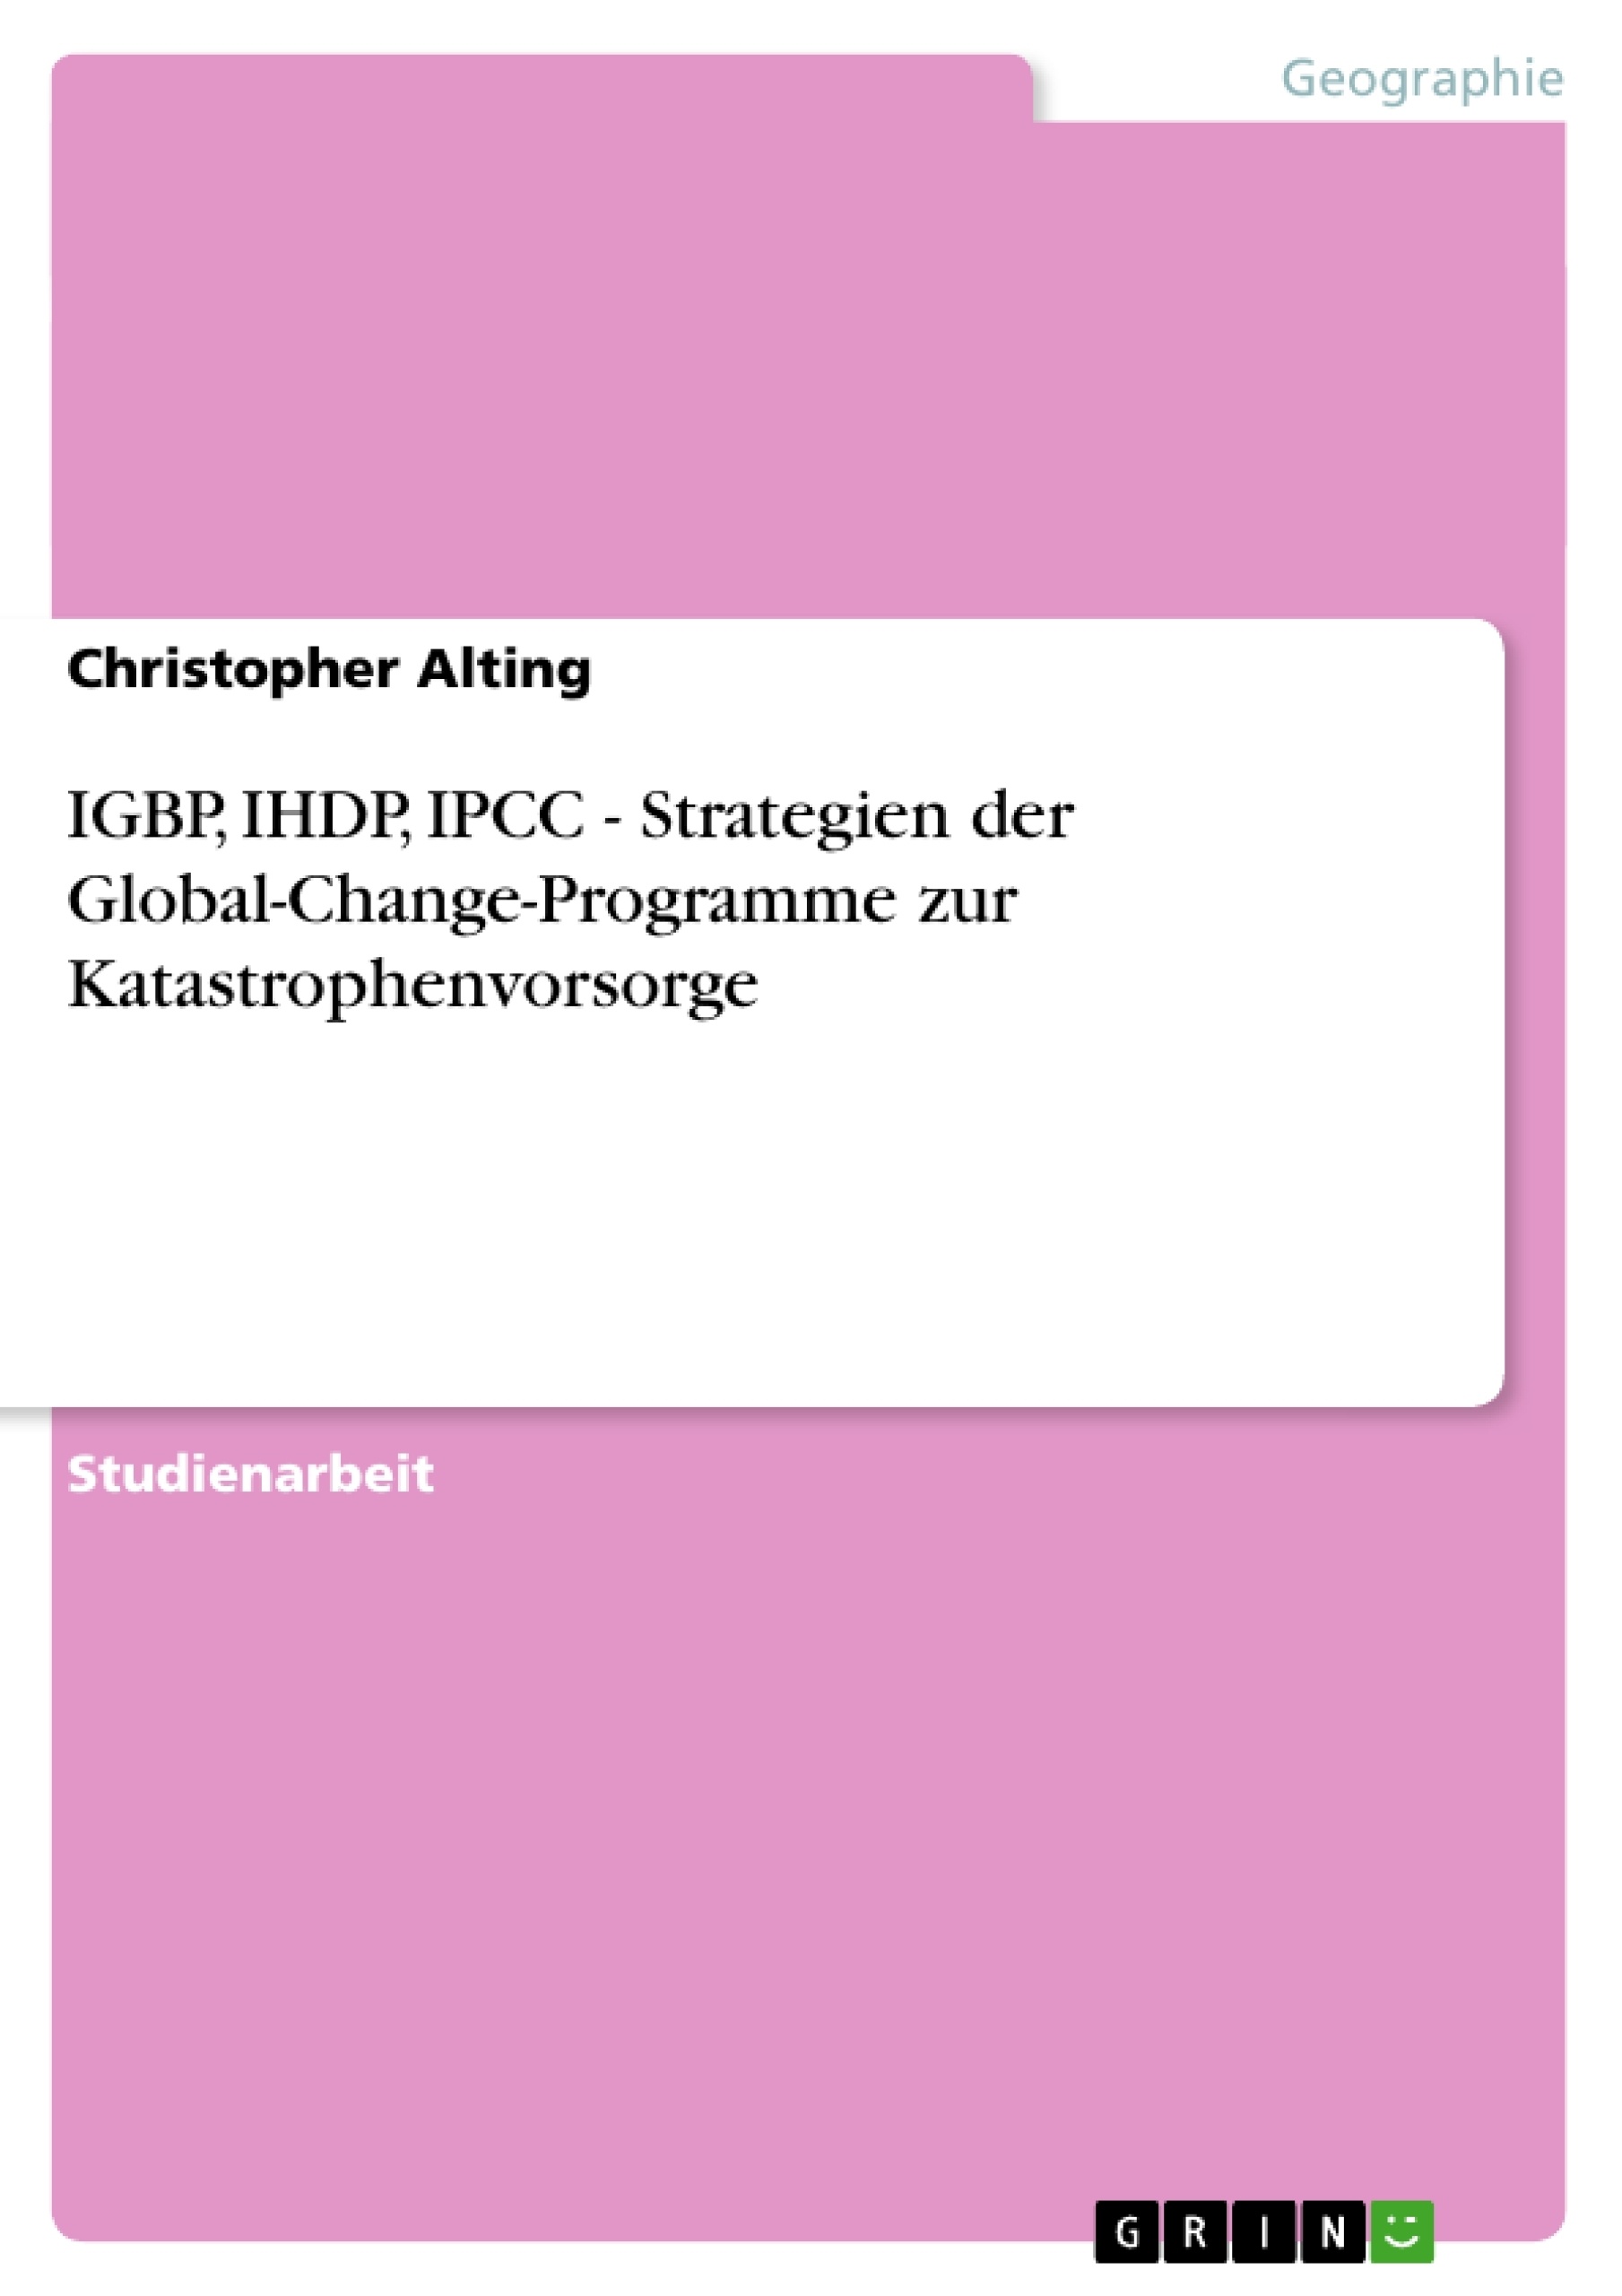 Título: IGBP, IHDP, IPCC - Strategien der Global-Change-Programme zur Katastrophenvorsorge